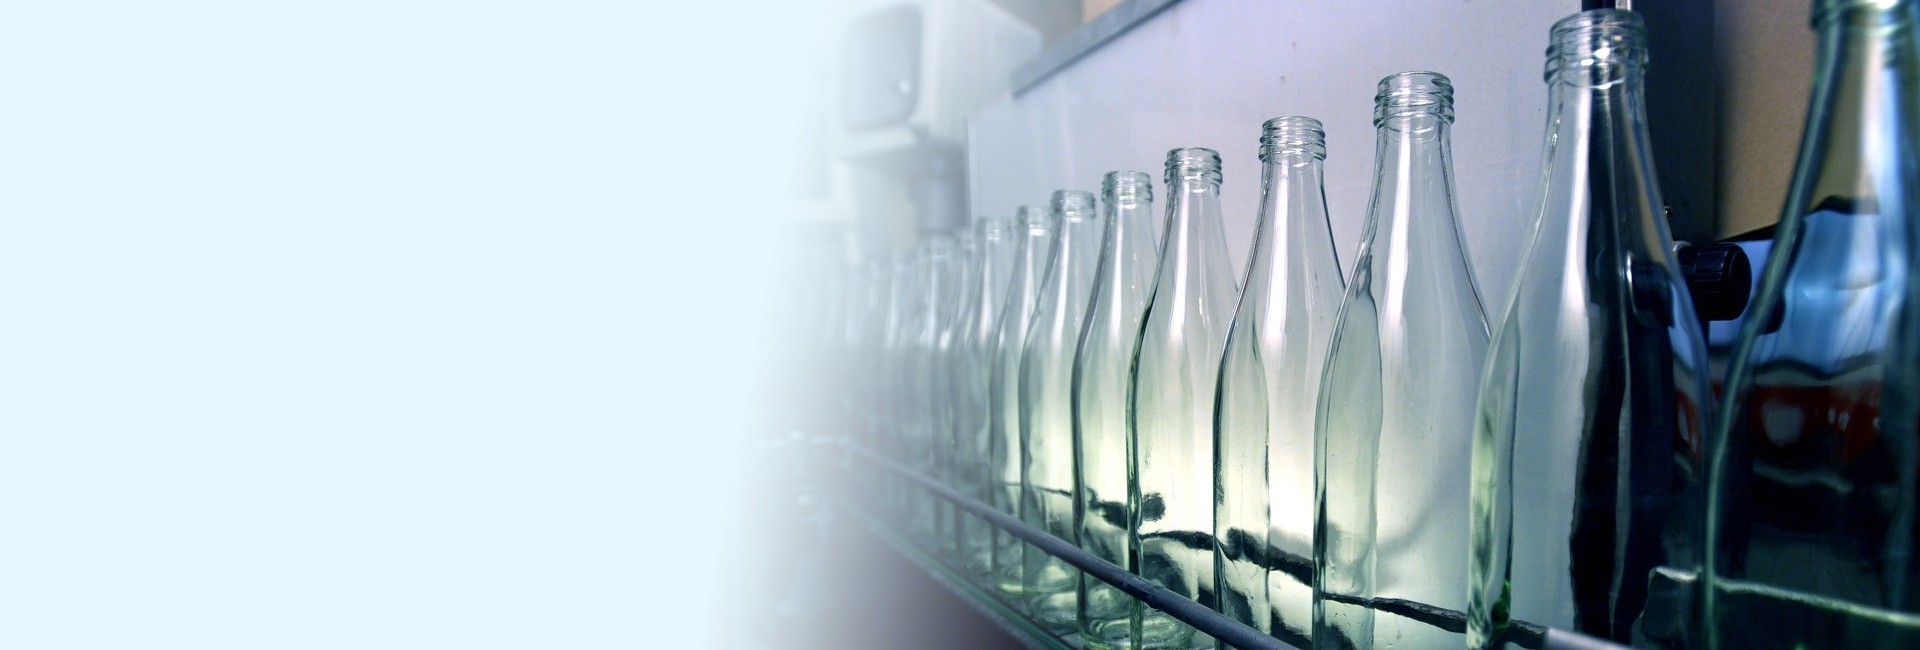 哈尔滨博瀛玻璃制品有限公司，主要经营各类玻璃瓶制品，白酒瓶，玻璃瓶，饮料瓶，各类调料瓶，咸菜瓶等。